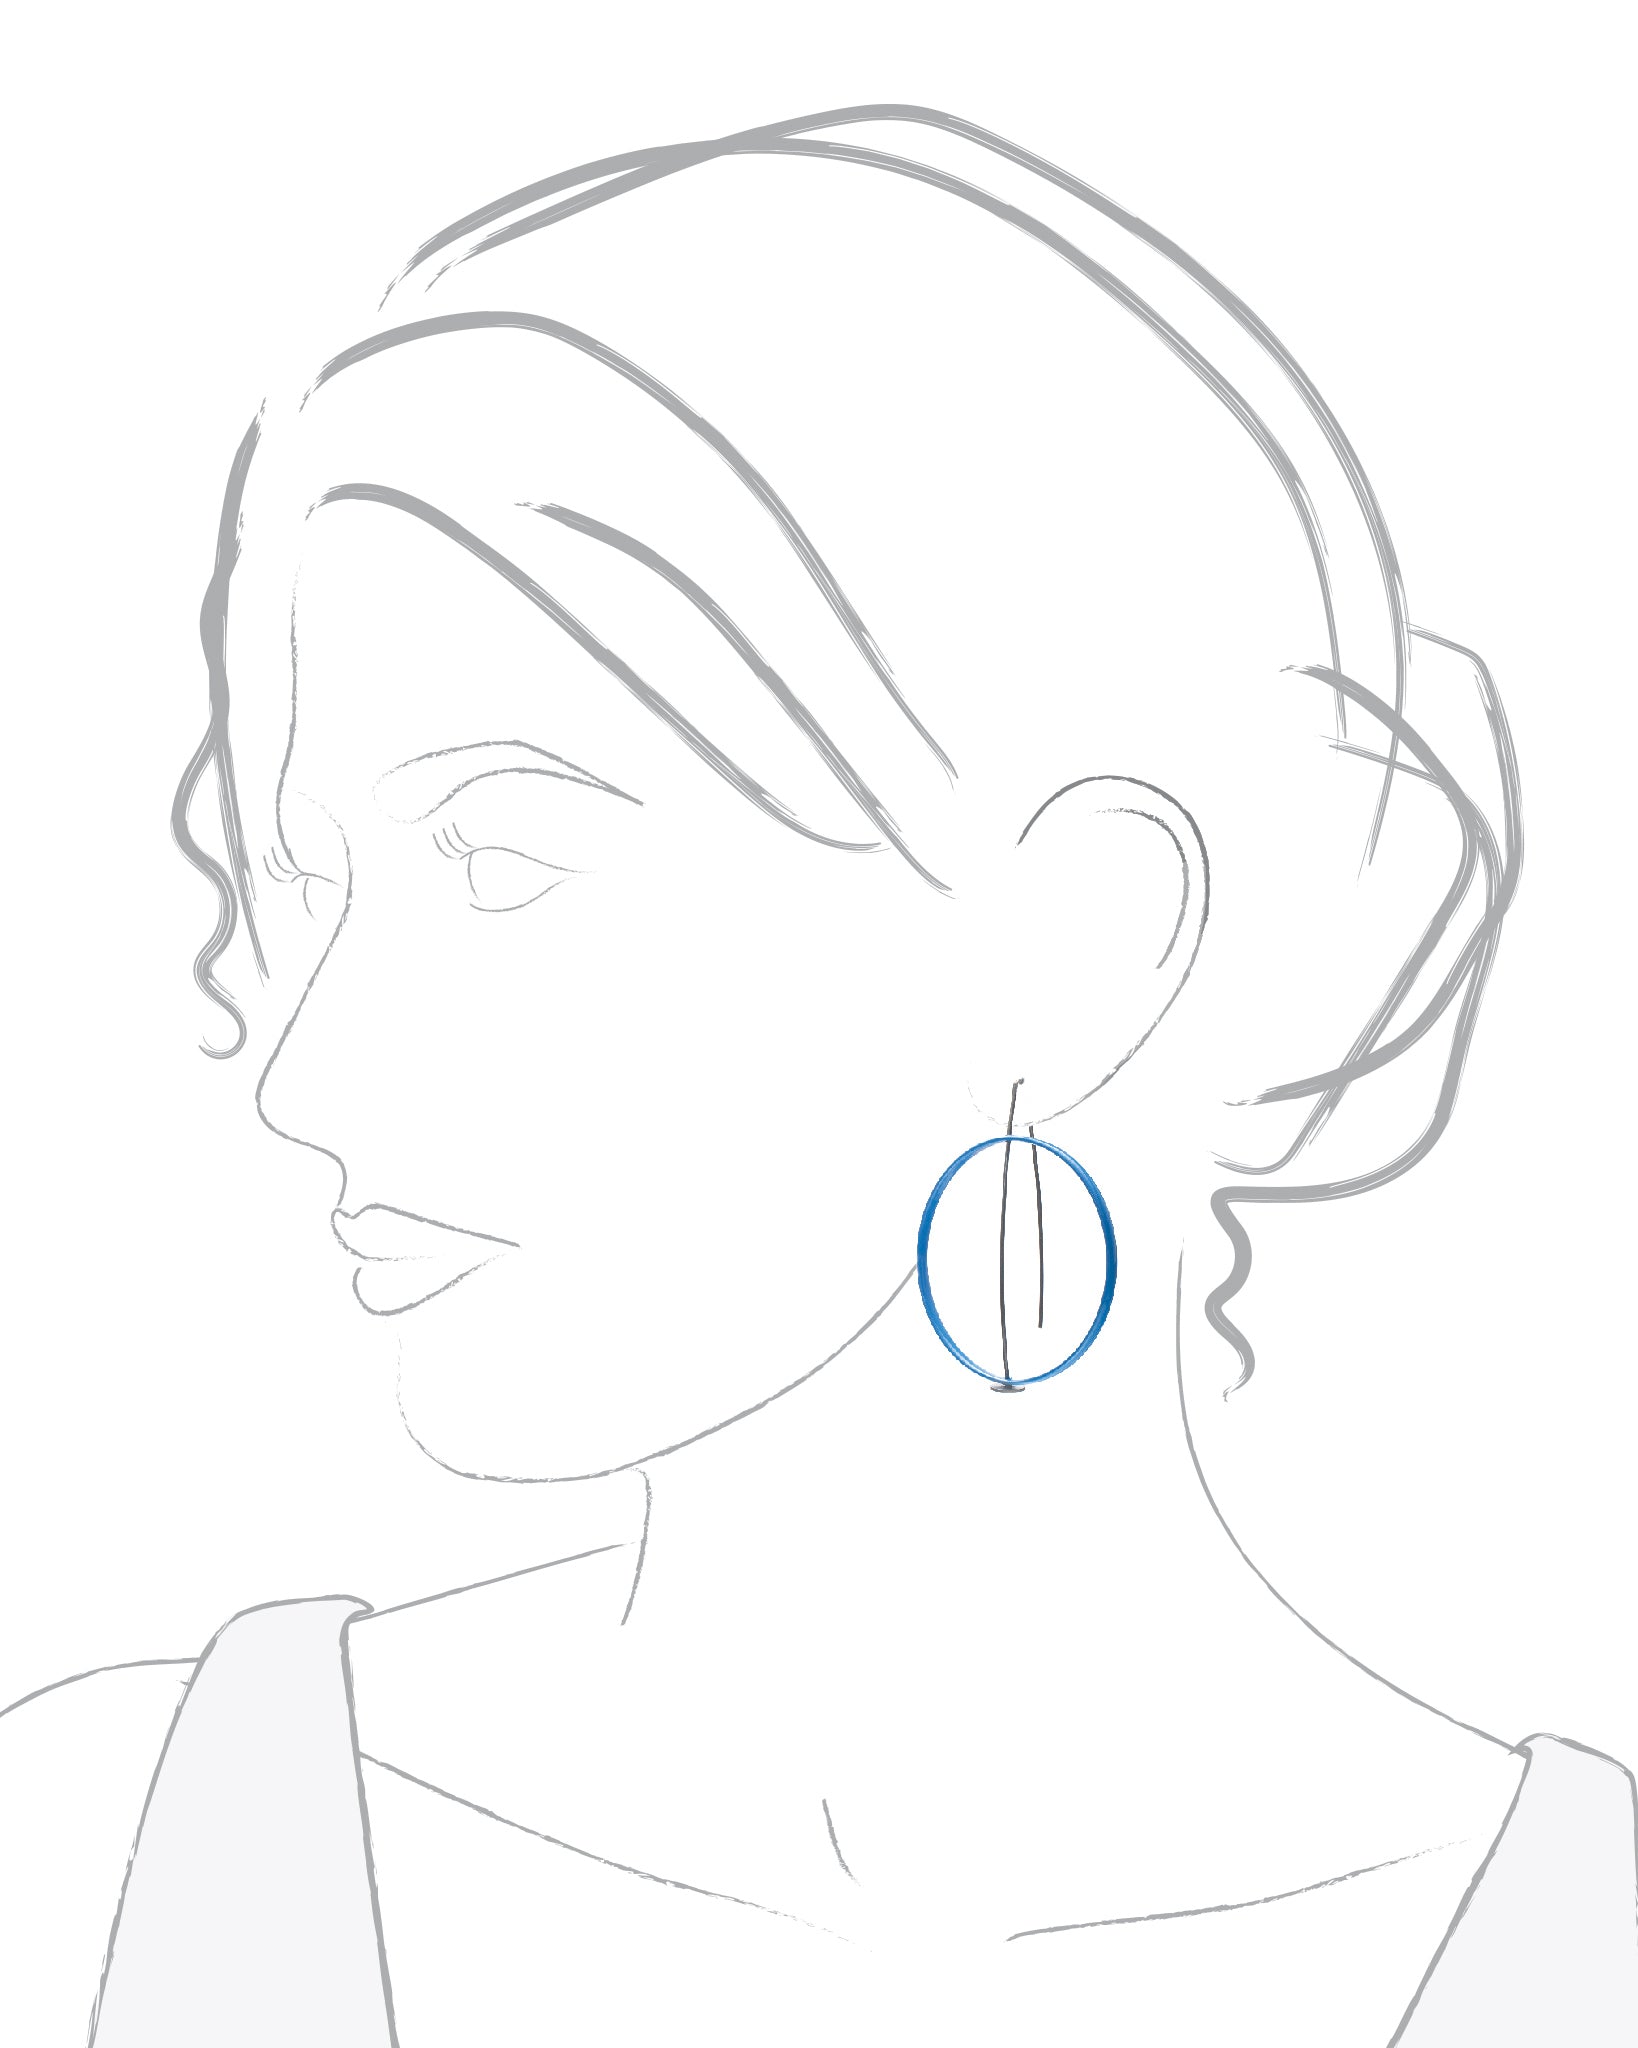 Simple Circle Earrings